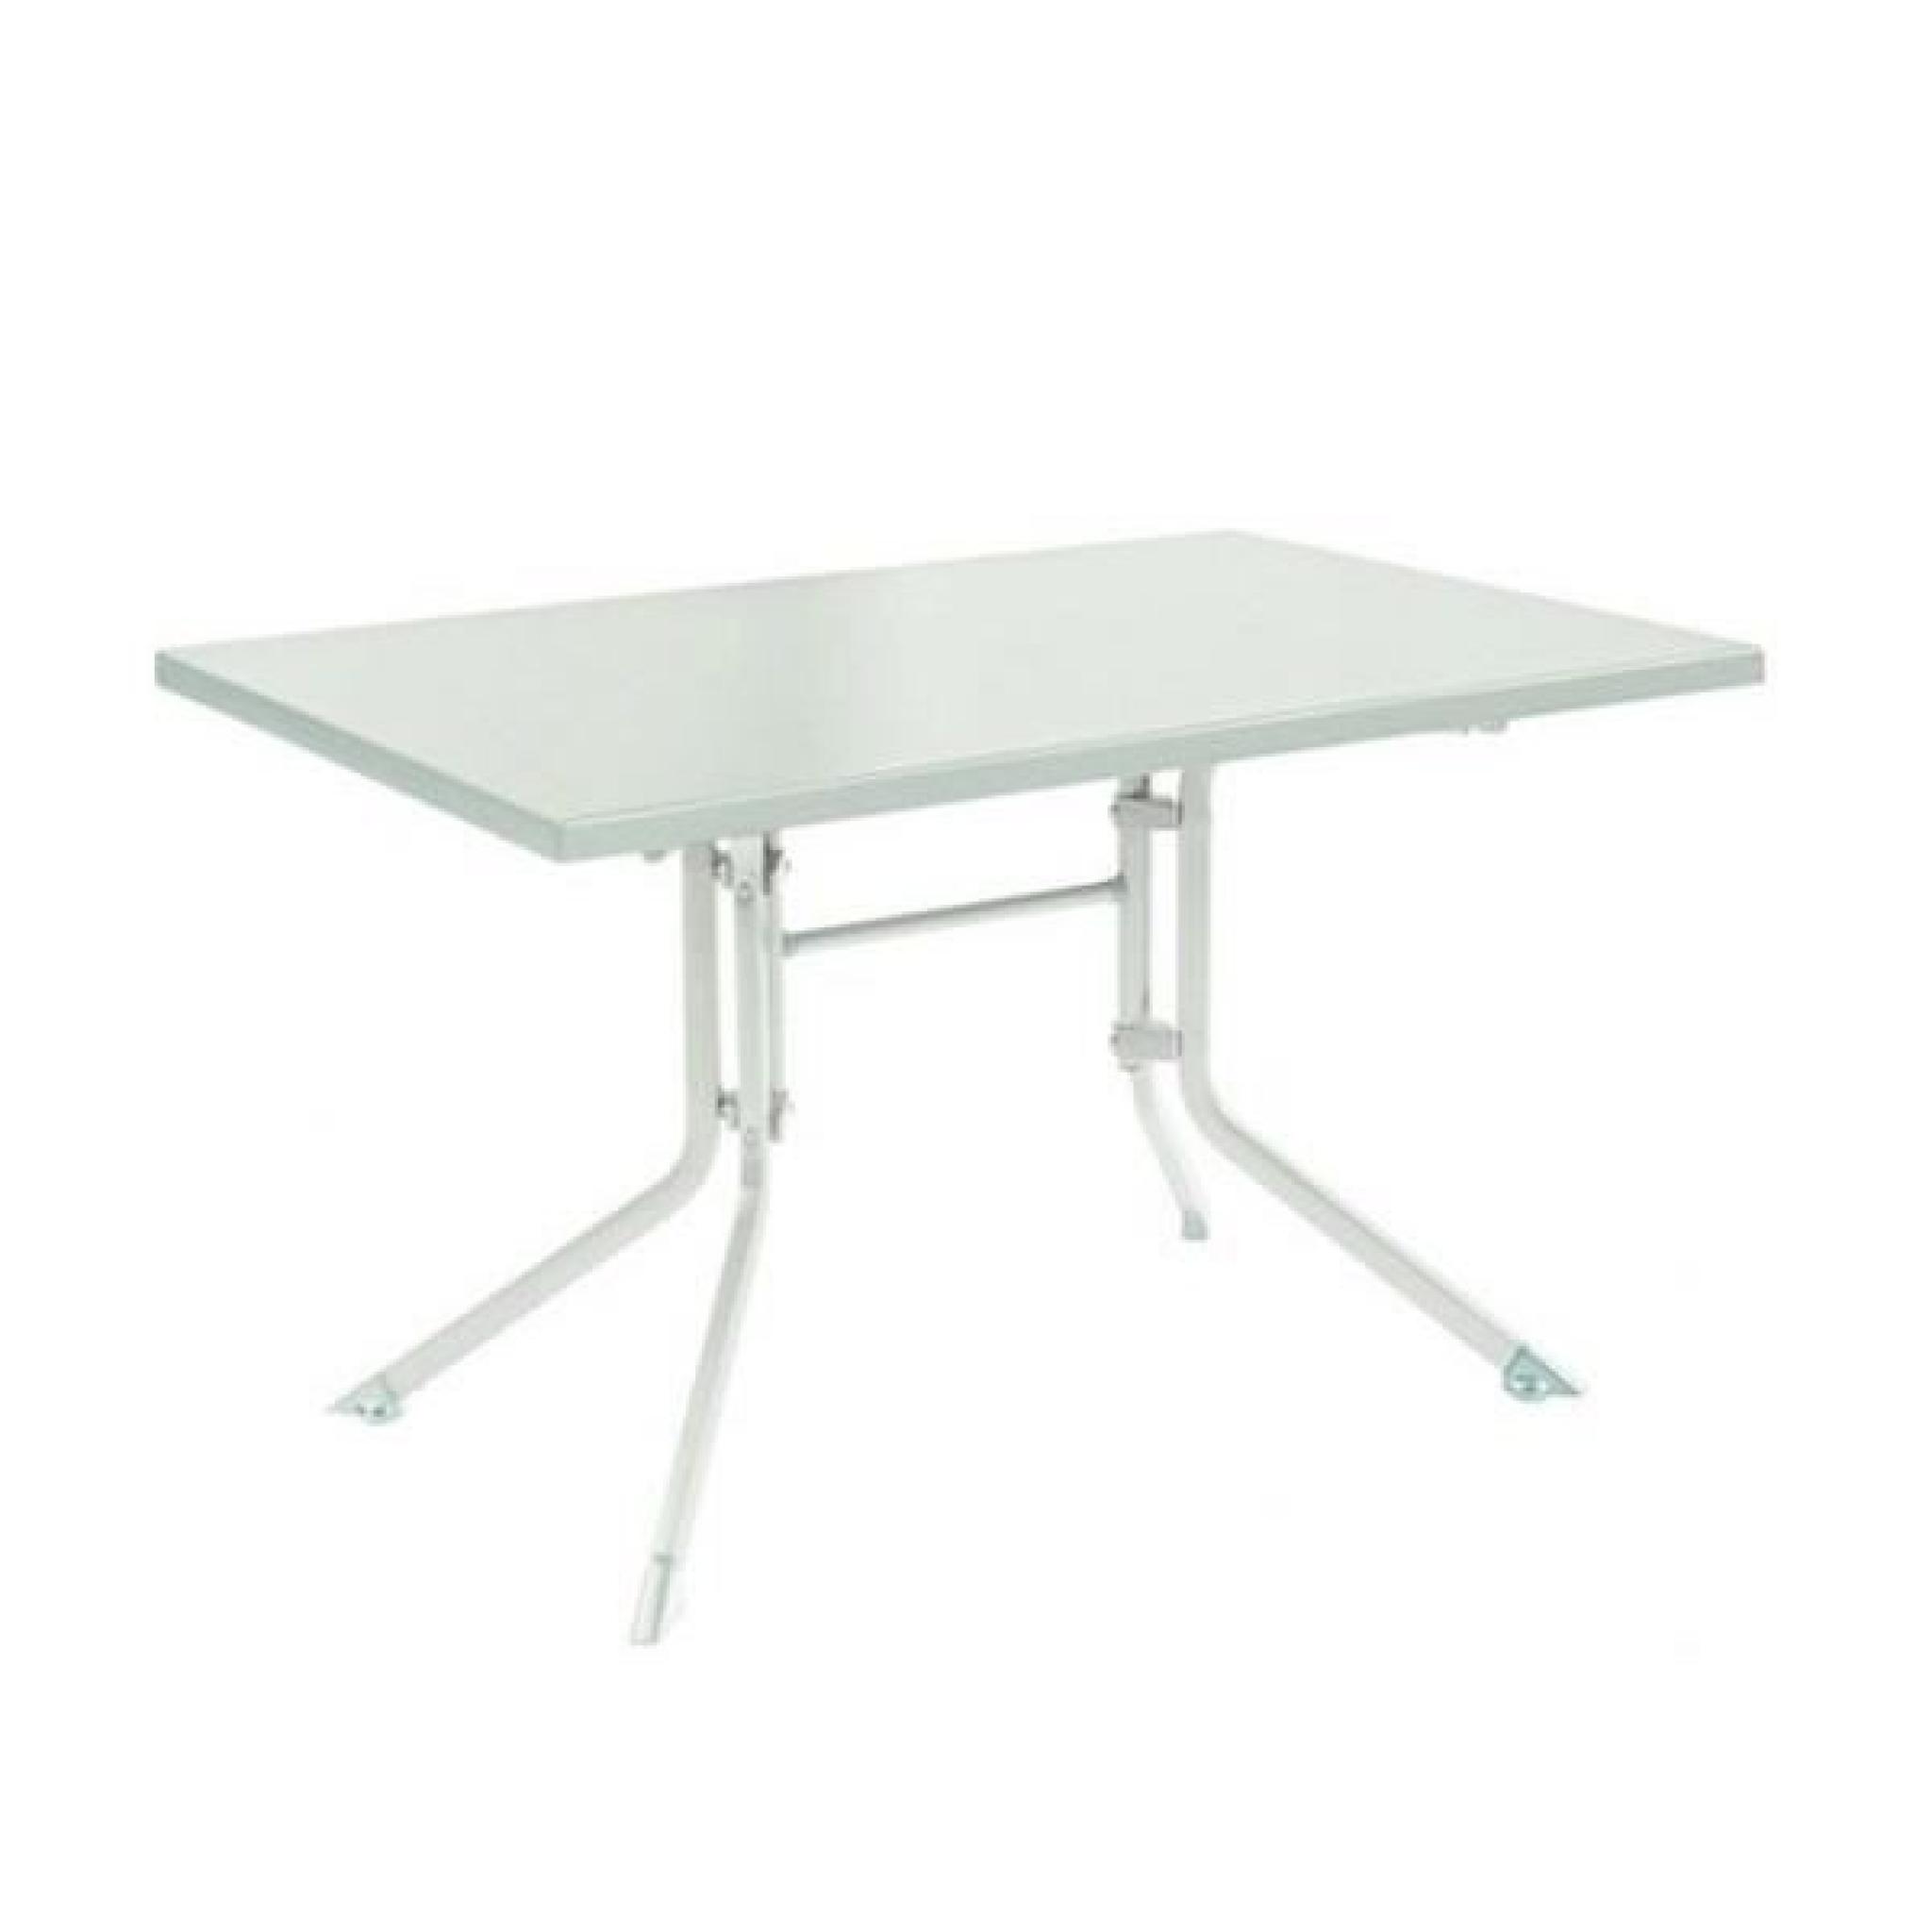 Table de jardin pliante blanc ADVANTAGE en aluminium - l 115 x L 70 x H 74 cm